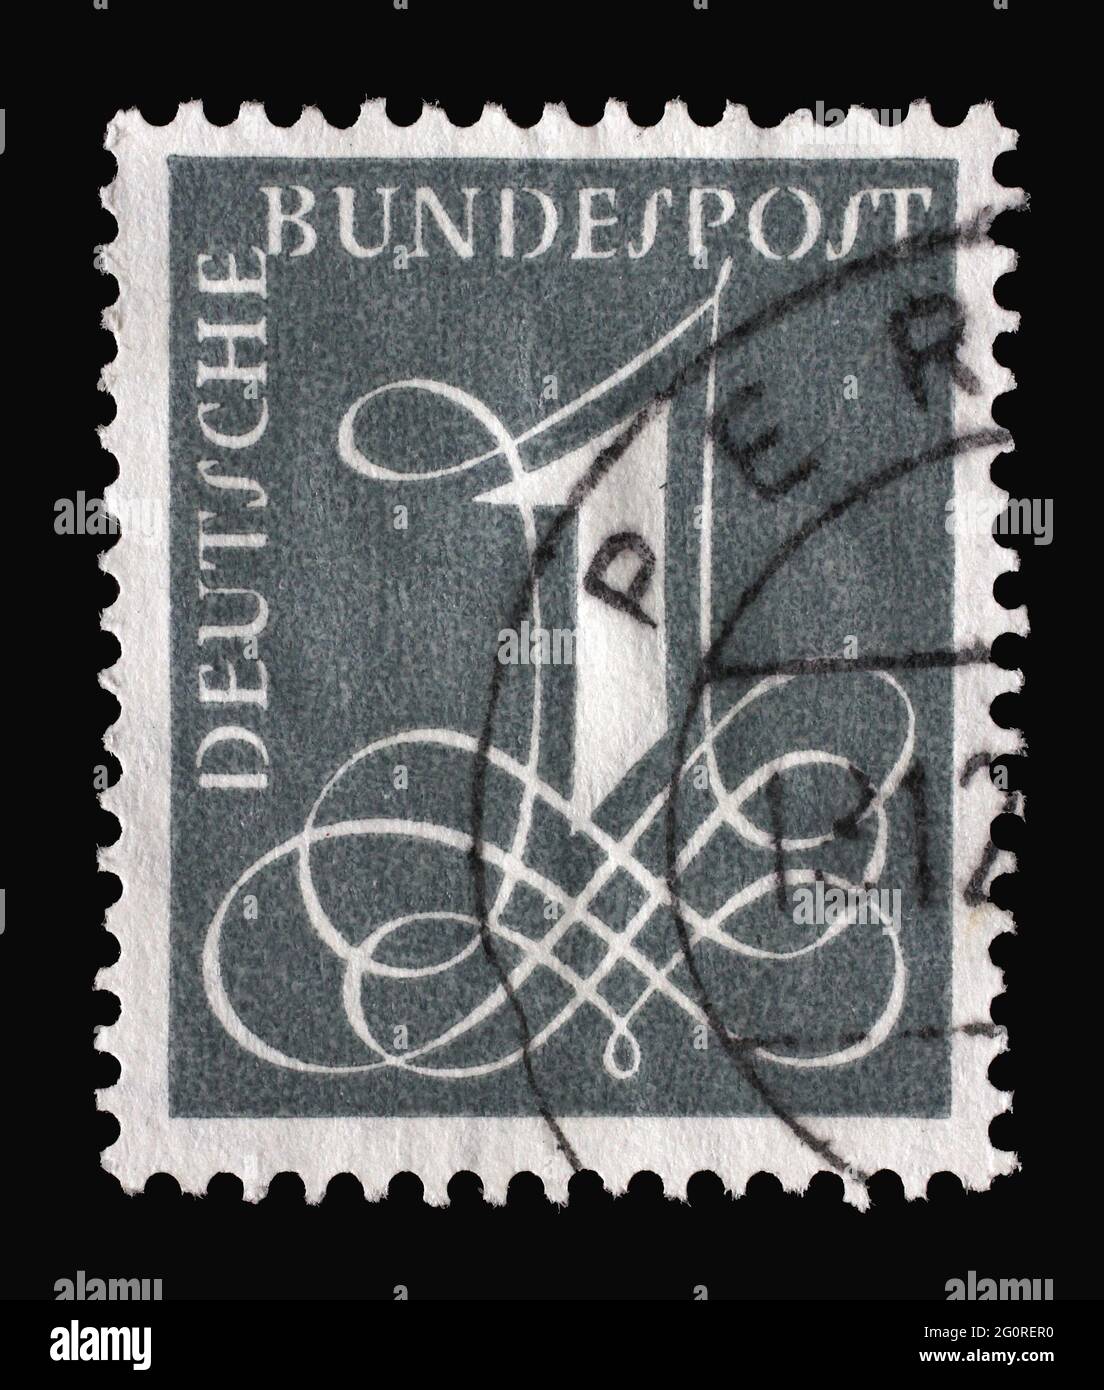 Le timbre imprimé en Allemagne indique le numéro 1 dans une police de caractères d'ornement, vers 1958 Banque D'Images